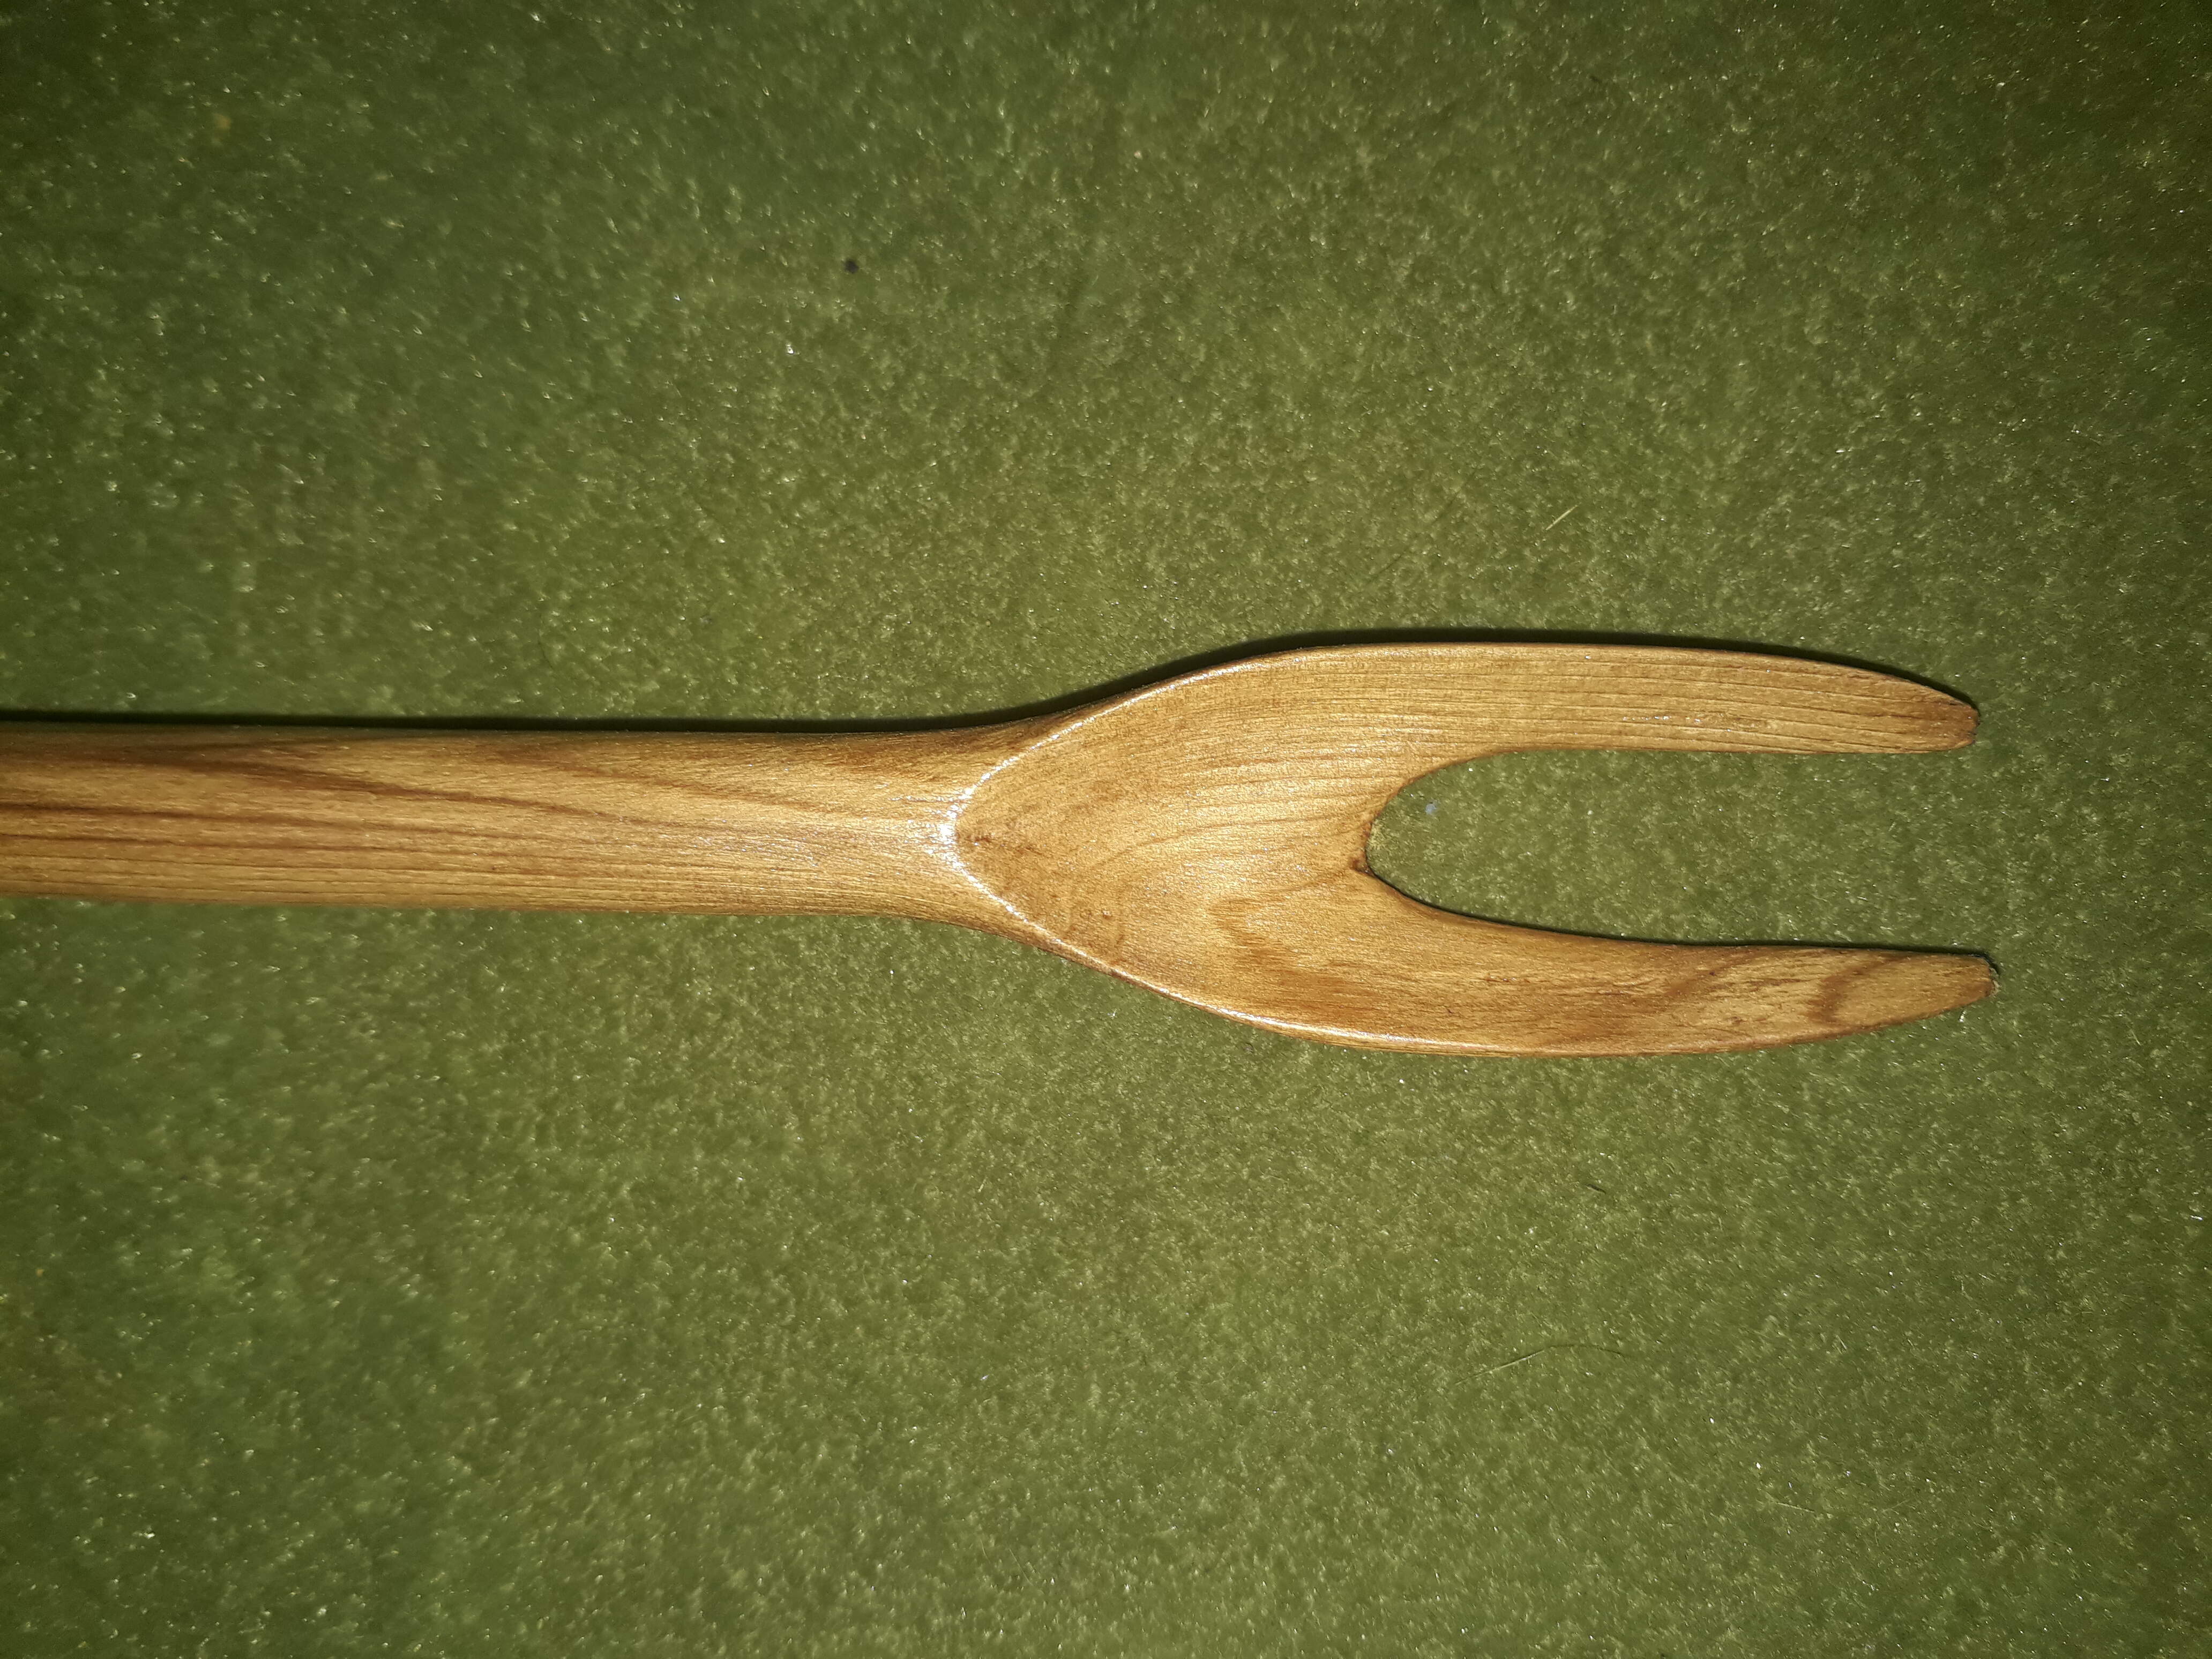 Spoon & Prong Grub Shovel